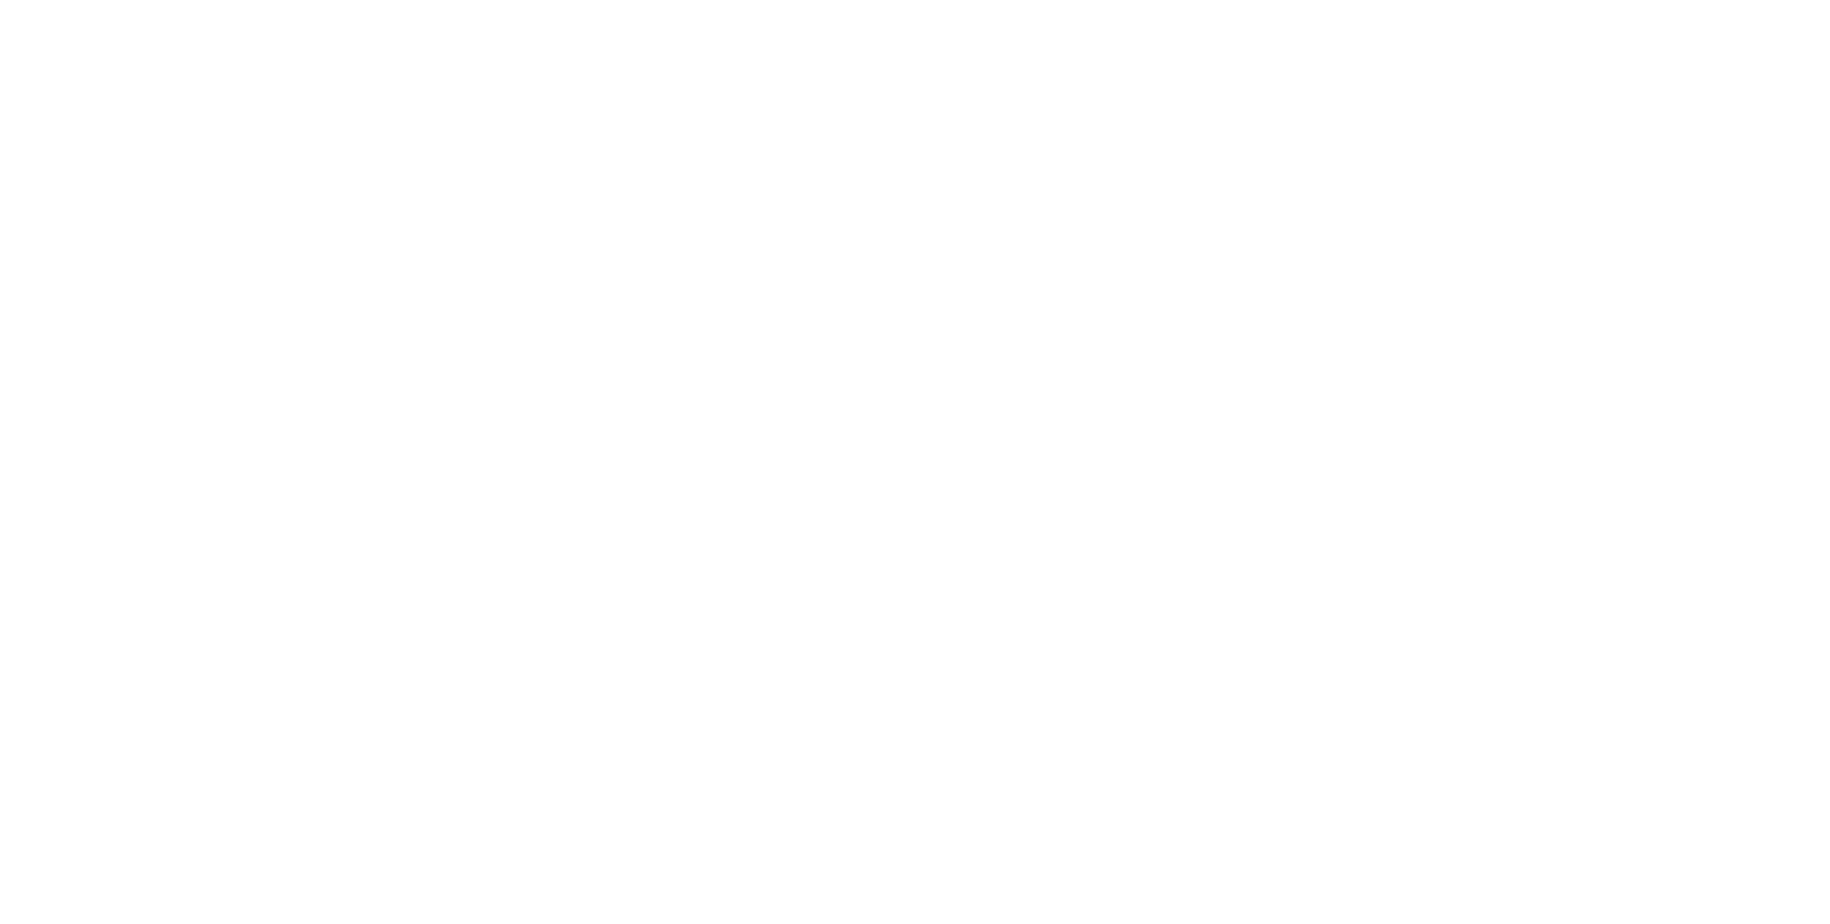 Cut Creations